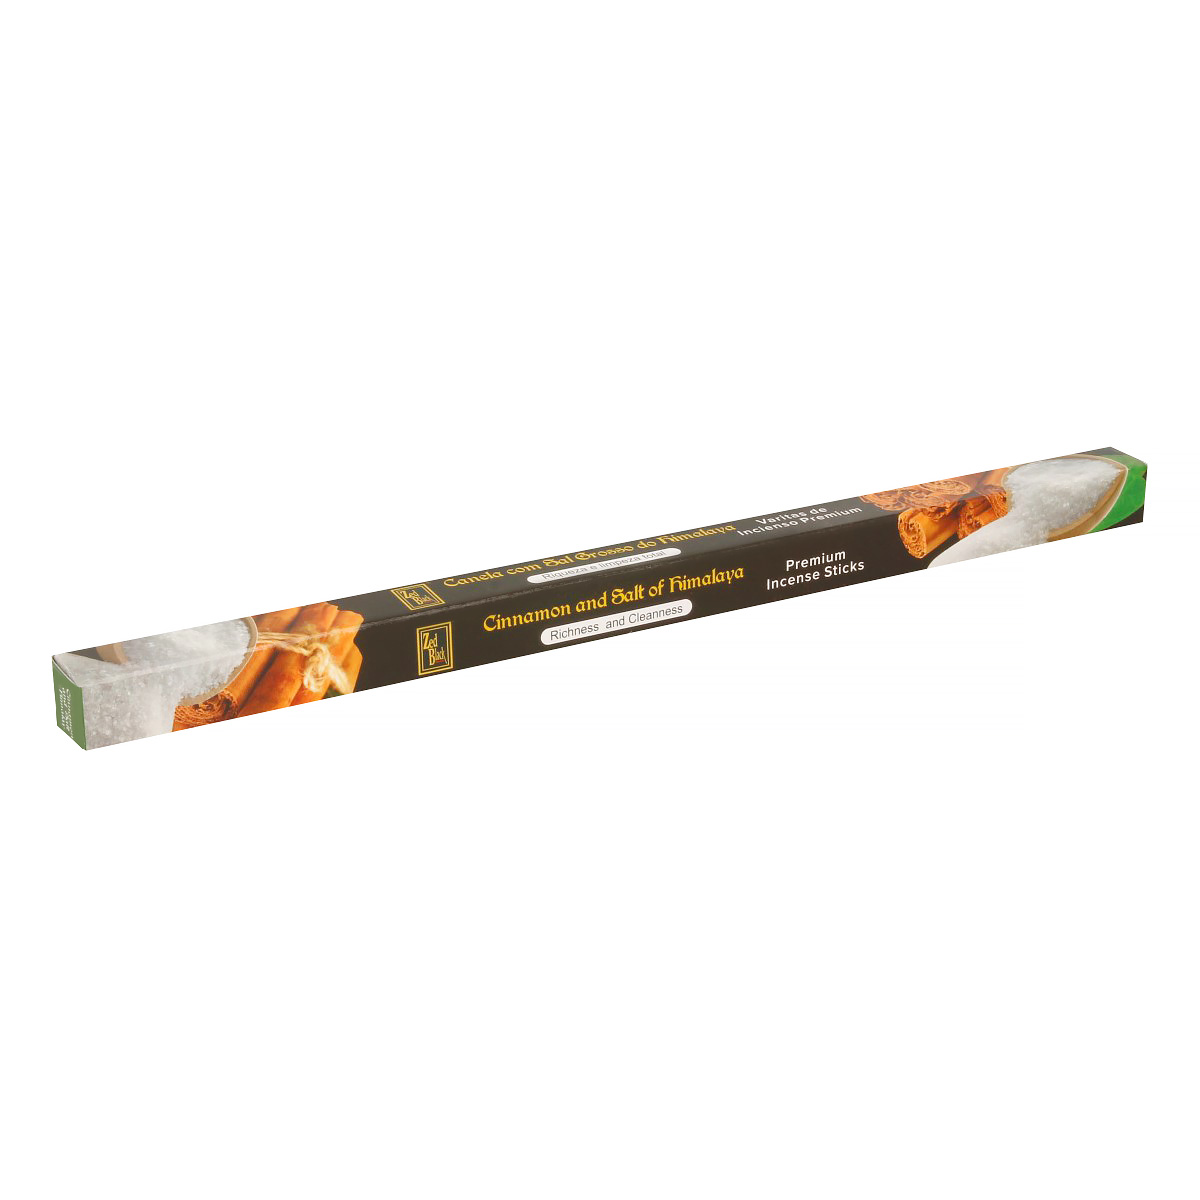 CINNAMON AND SALT OF HIMALAYA Premium Incense Sticks, Zed Black (КОРИЦА И ГИМАЛАЙСКАЯ СОЛЬ премиум благовония палочки, Зед Блэк), уп. 8 палочек.